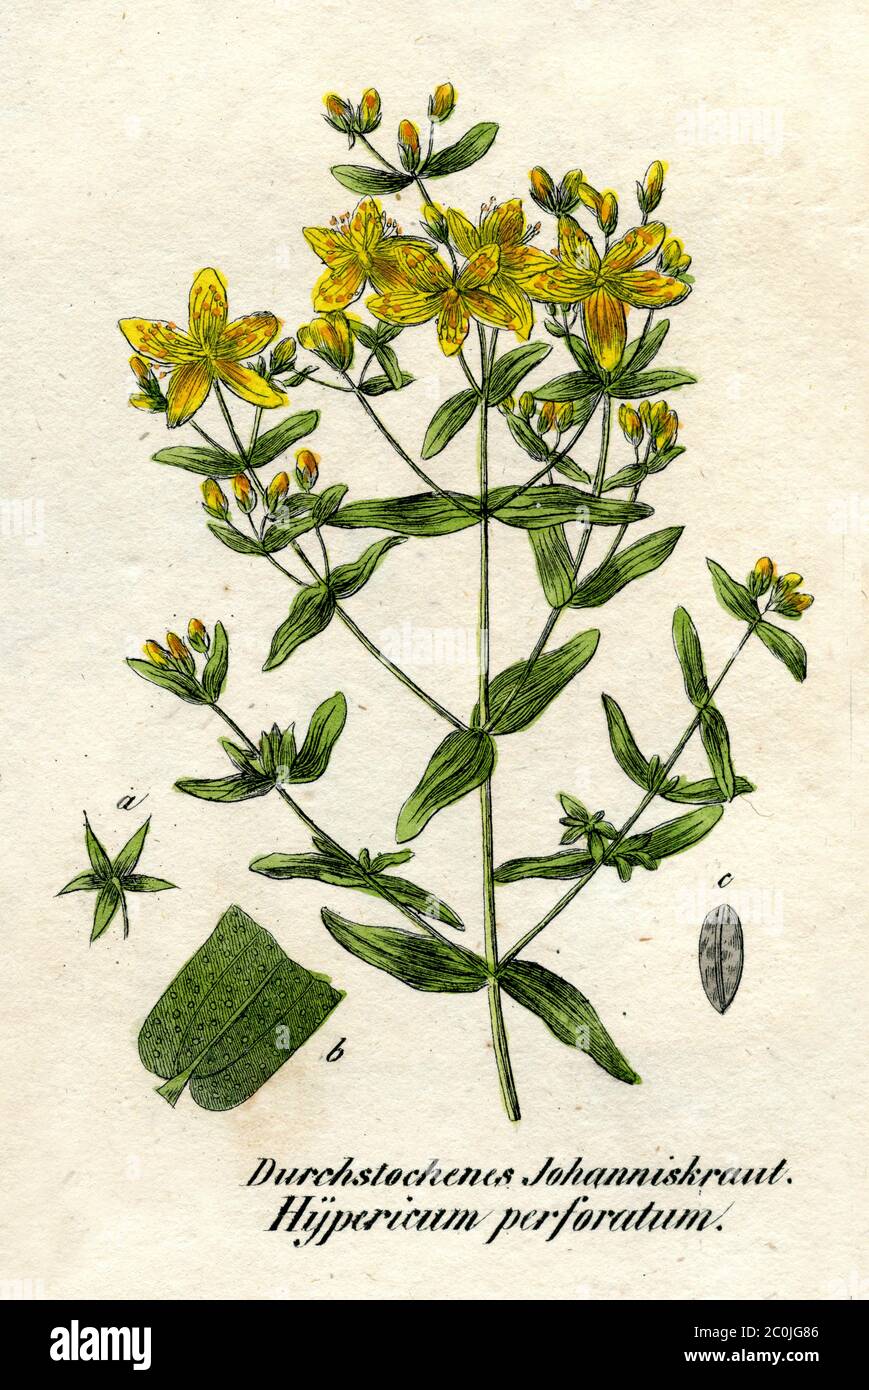 Saint John's wort / Hypericum perforatum / Echtes Johanniskraut (botany book, 1850) Stock Photo